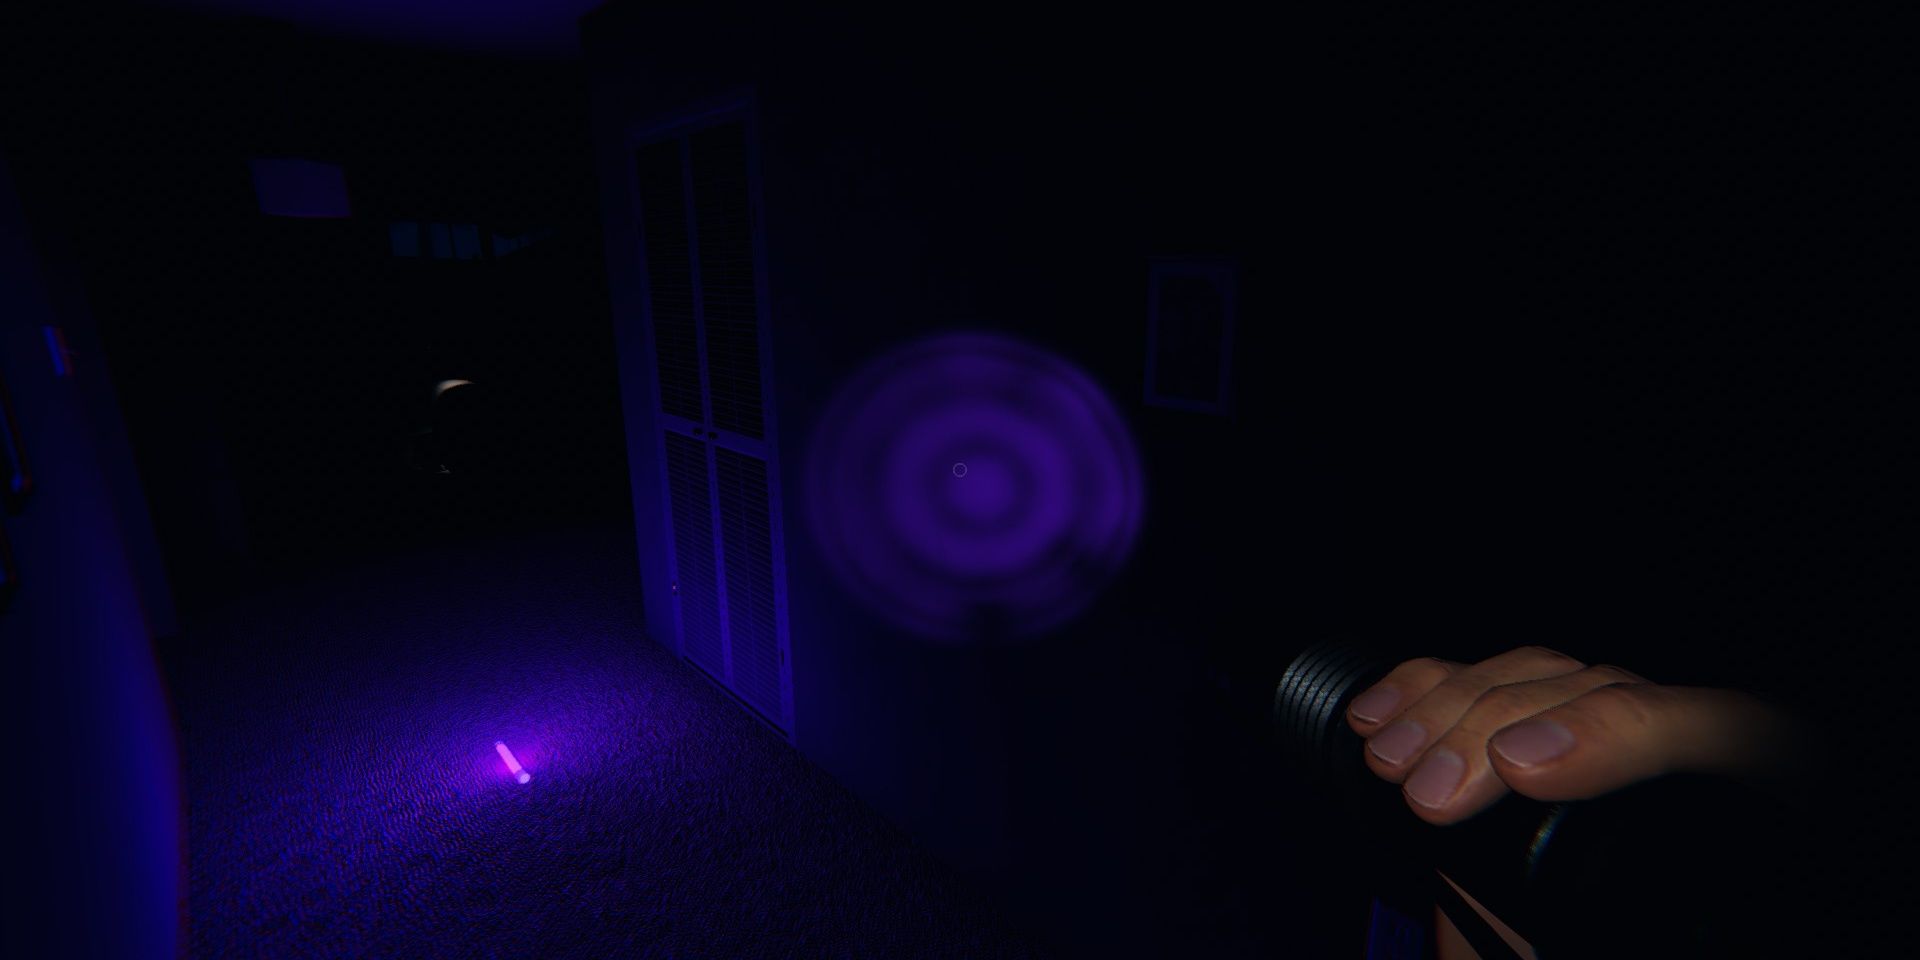 Ultraviolet glowstick vs ultraviolet flashlight